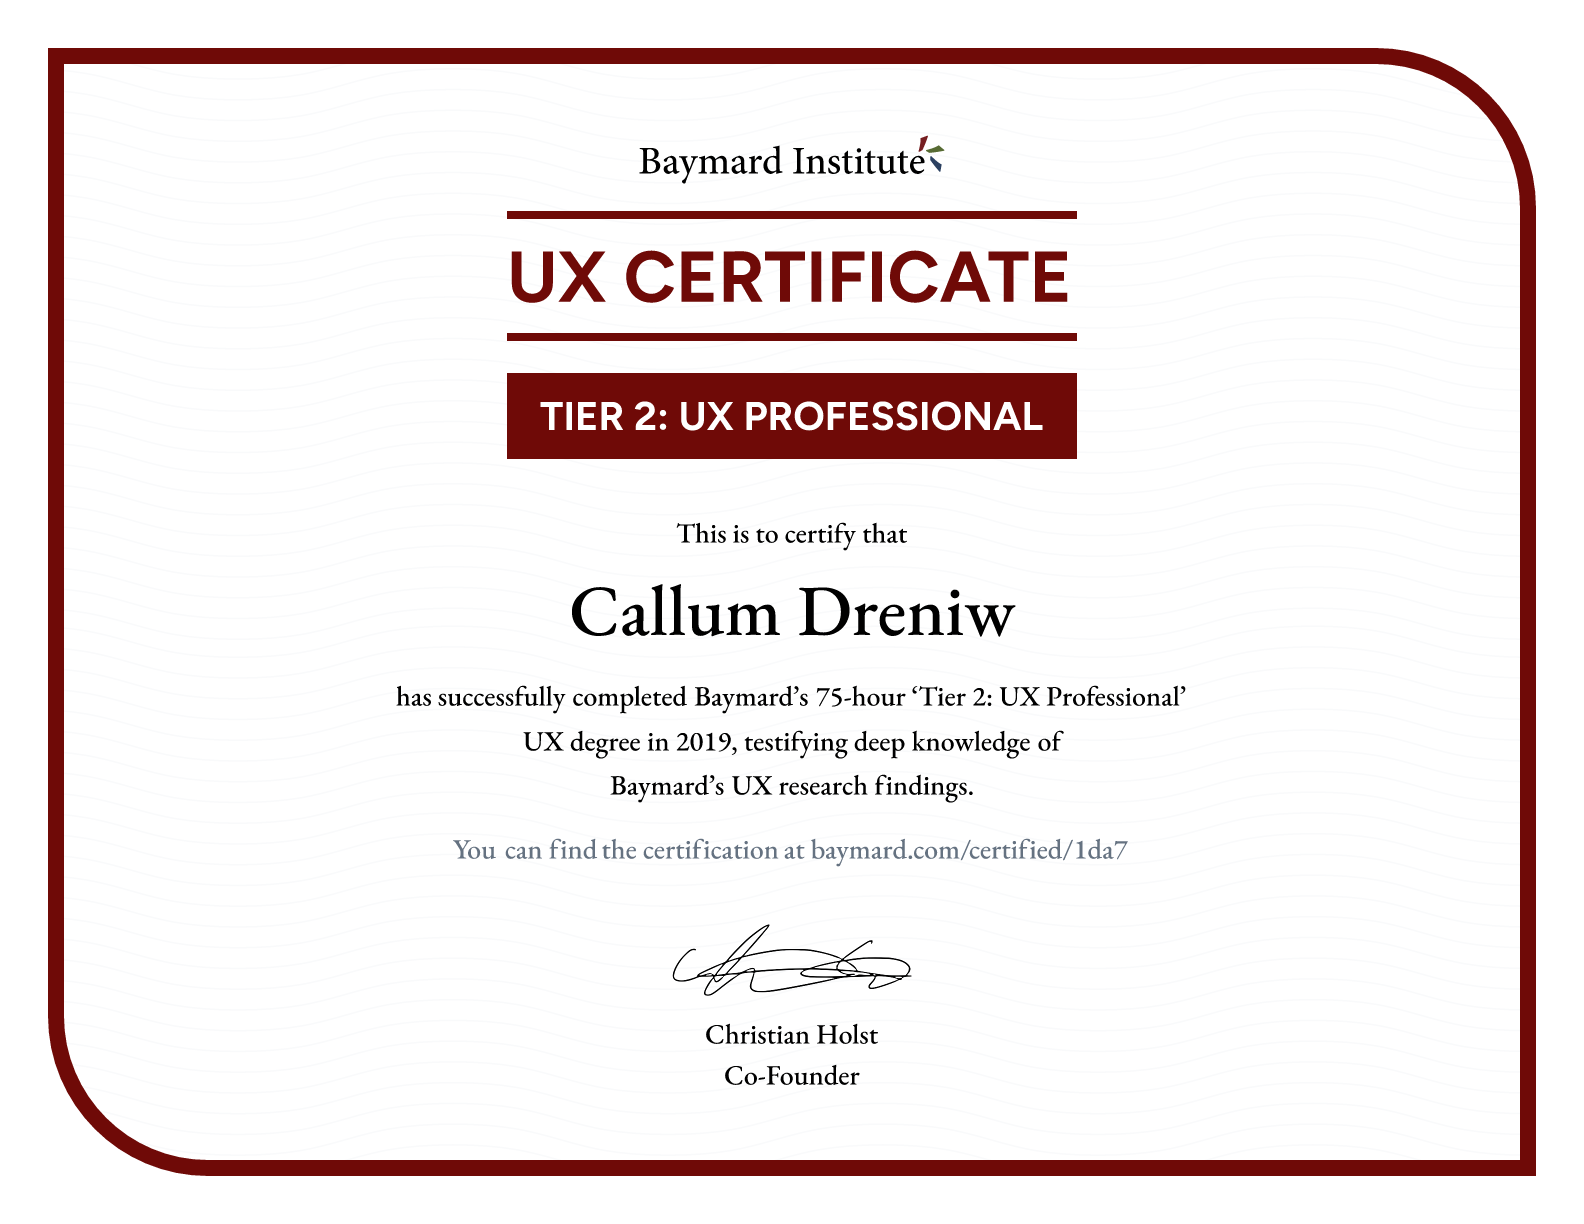 Callum Dreniw’s certificate